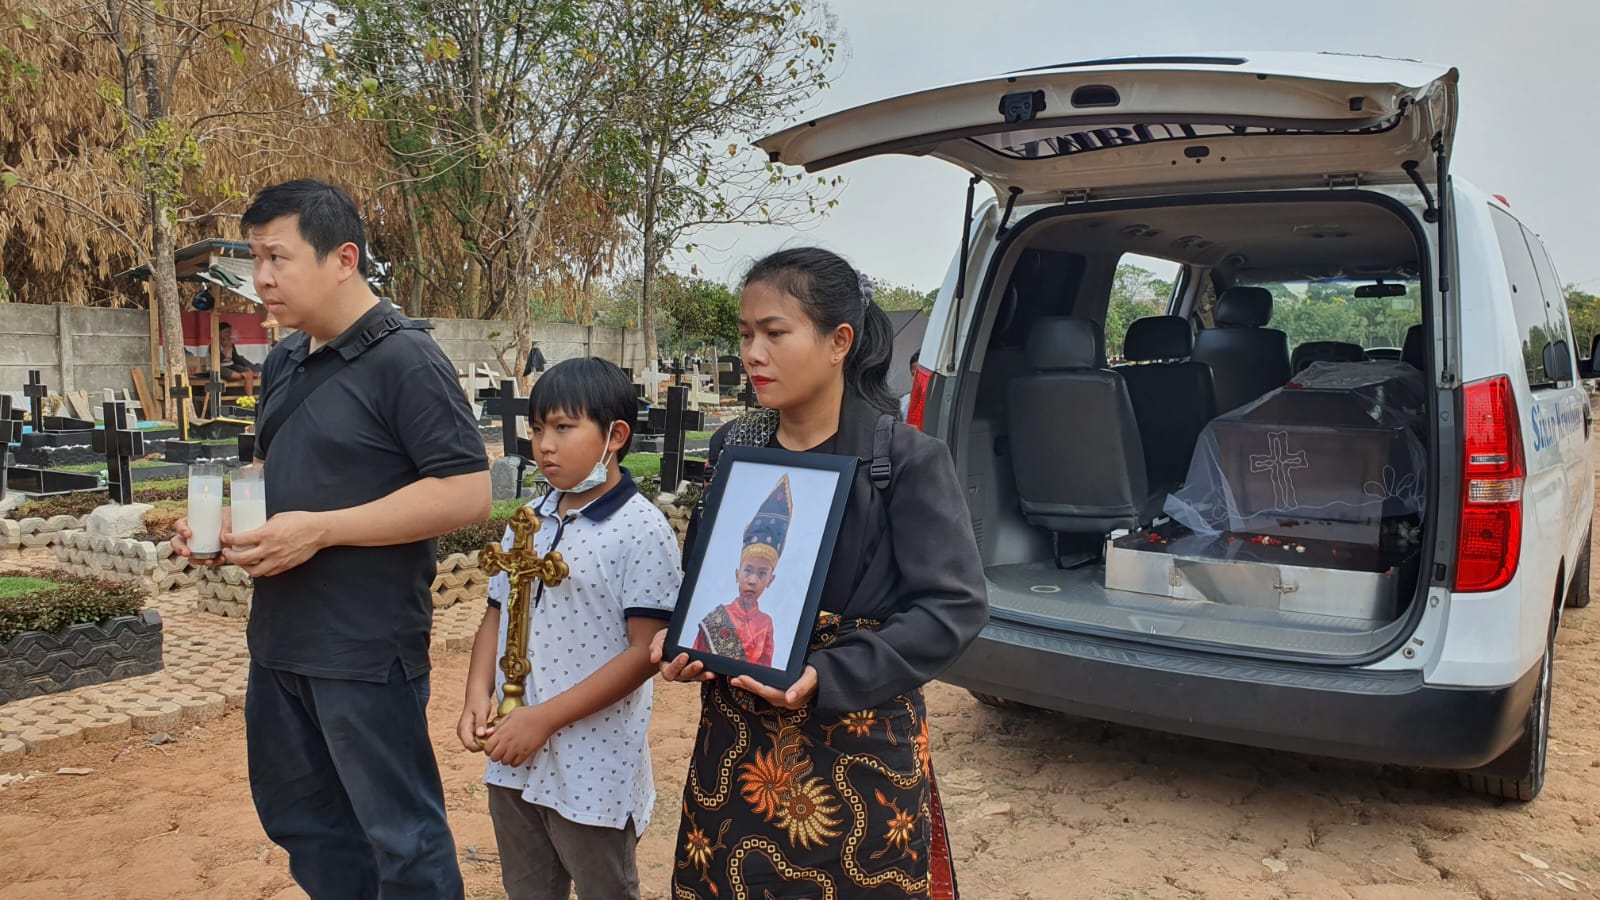 Alvaro Meninggal Dunia Usai Operasi Amandel di RS Kartika Husada Bekasi, Keluarga: Anak Kami Sudah Tenang